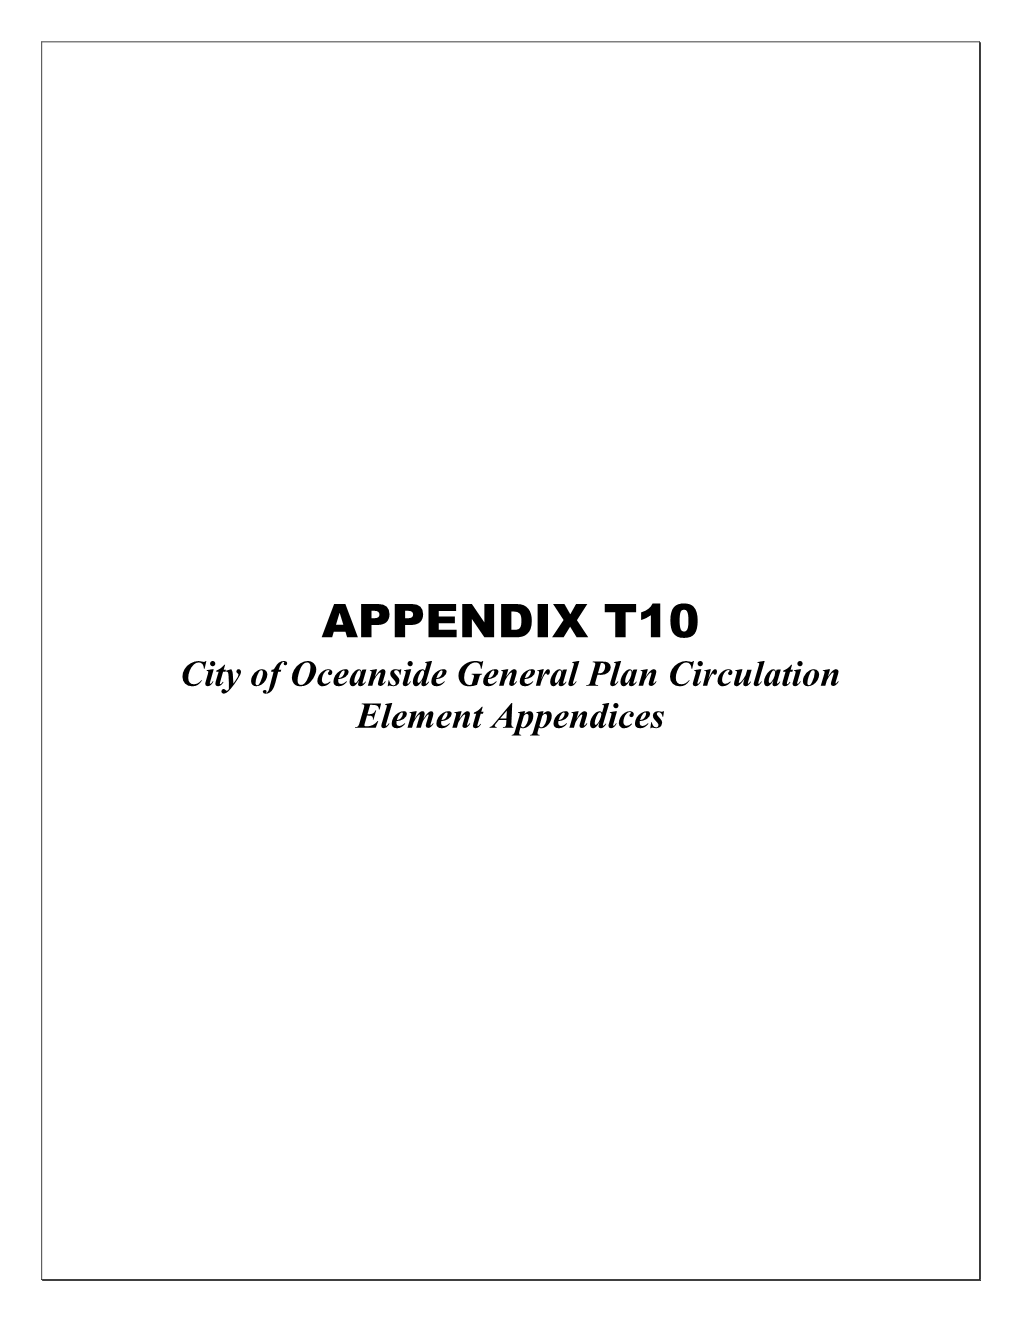 40 Appendix T10 Circulation Element Appendices